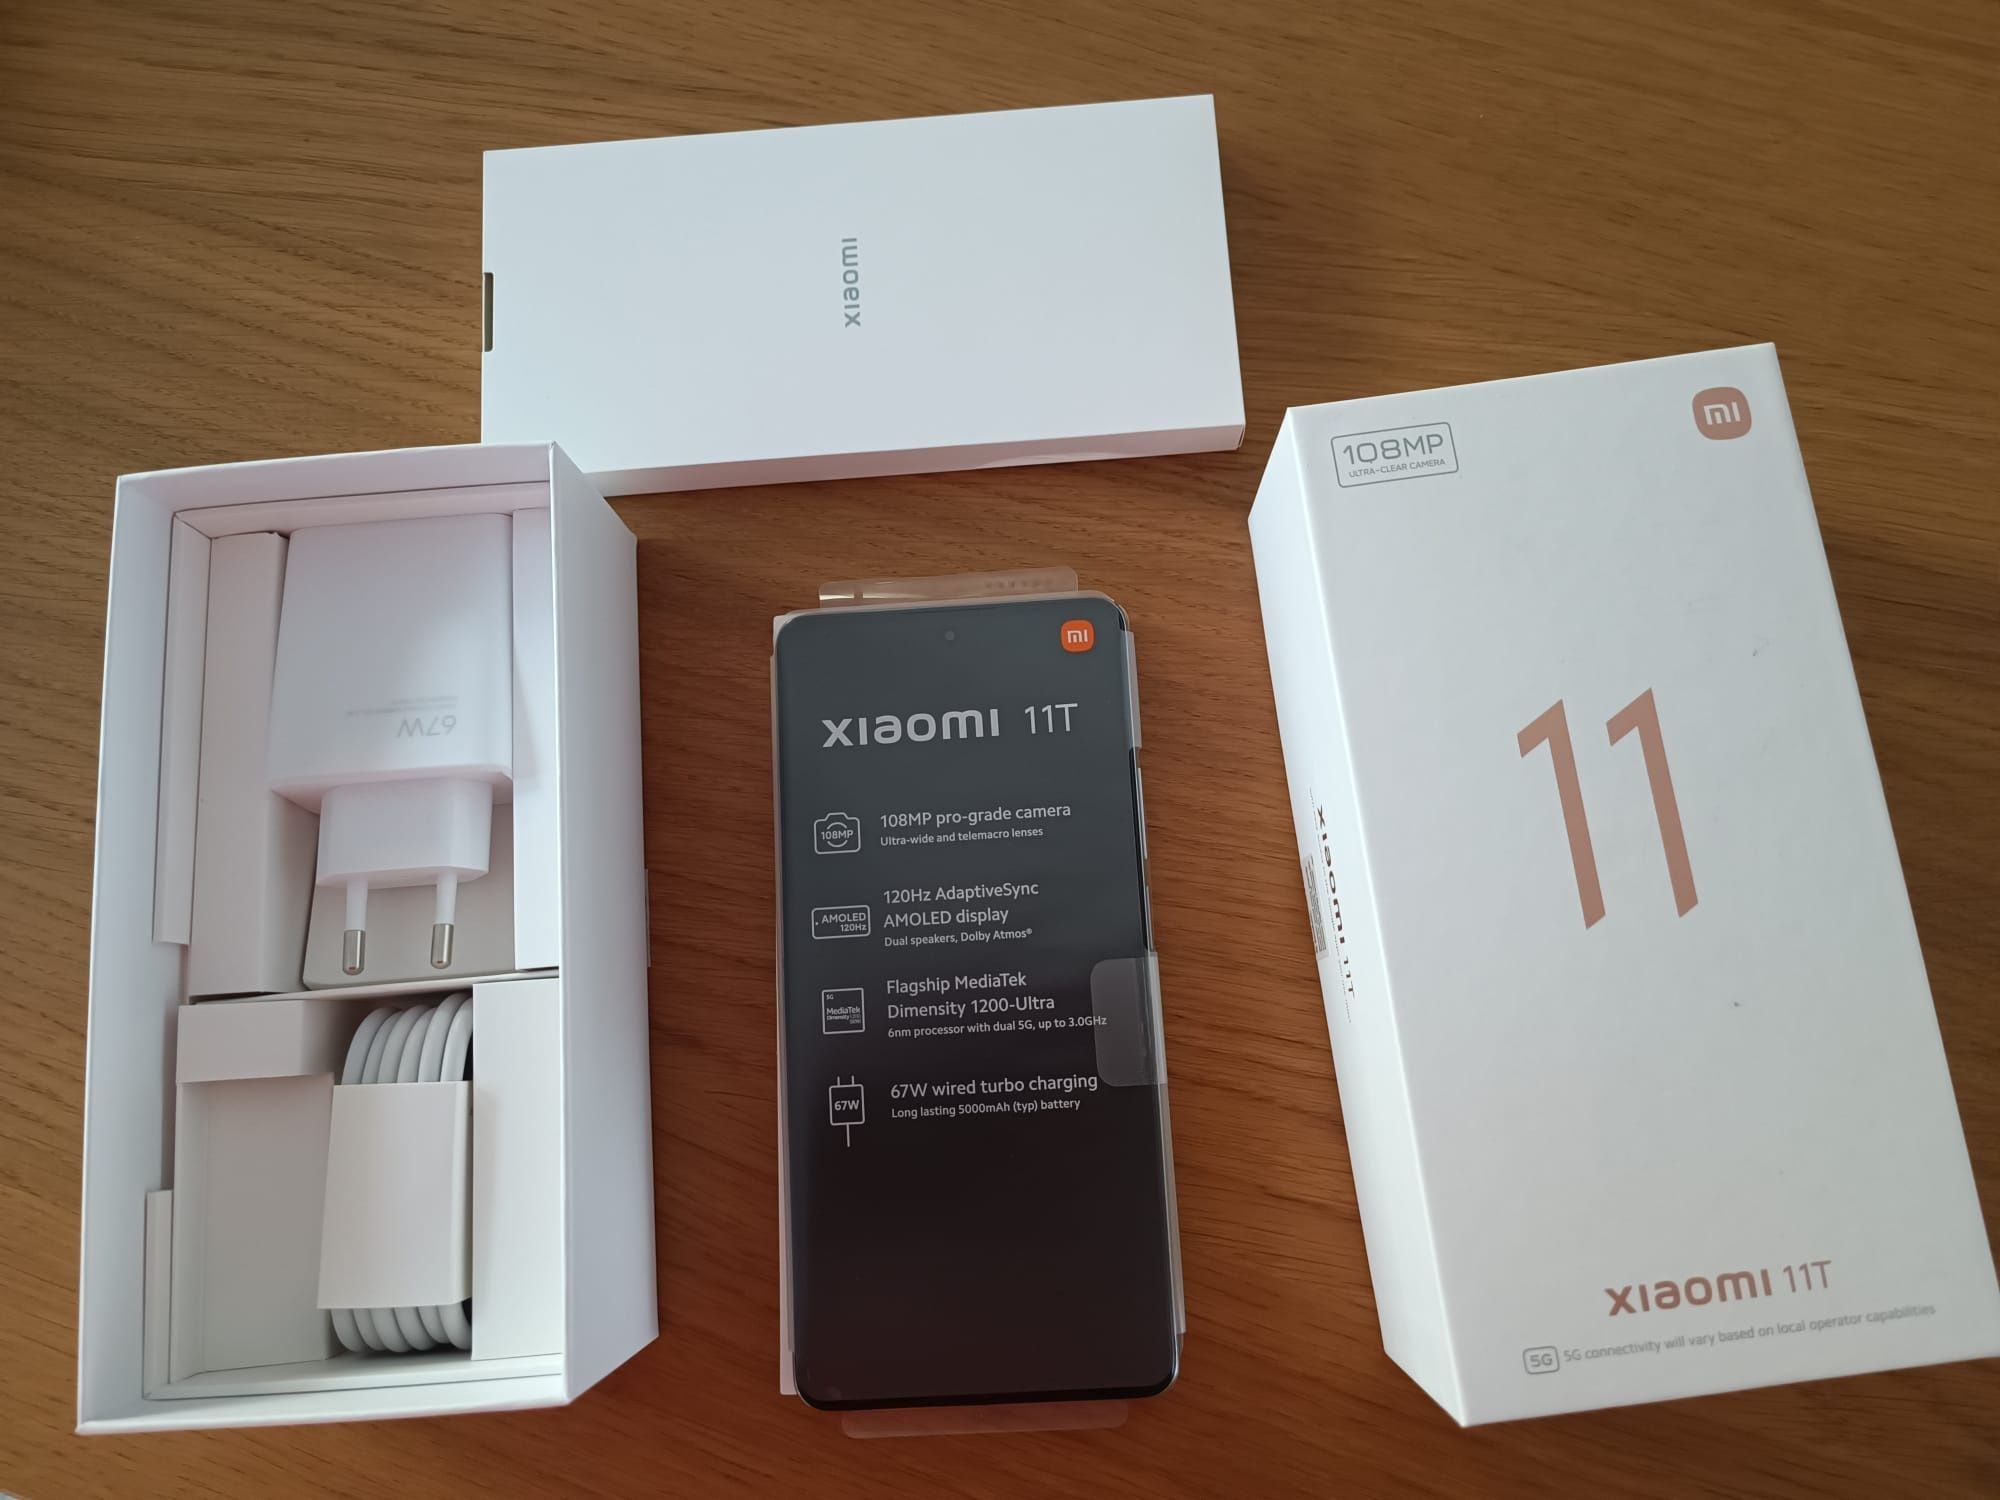 Xiaomi 11T 256gb